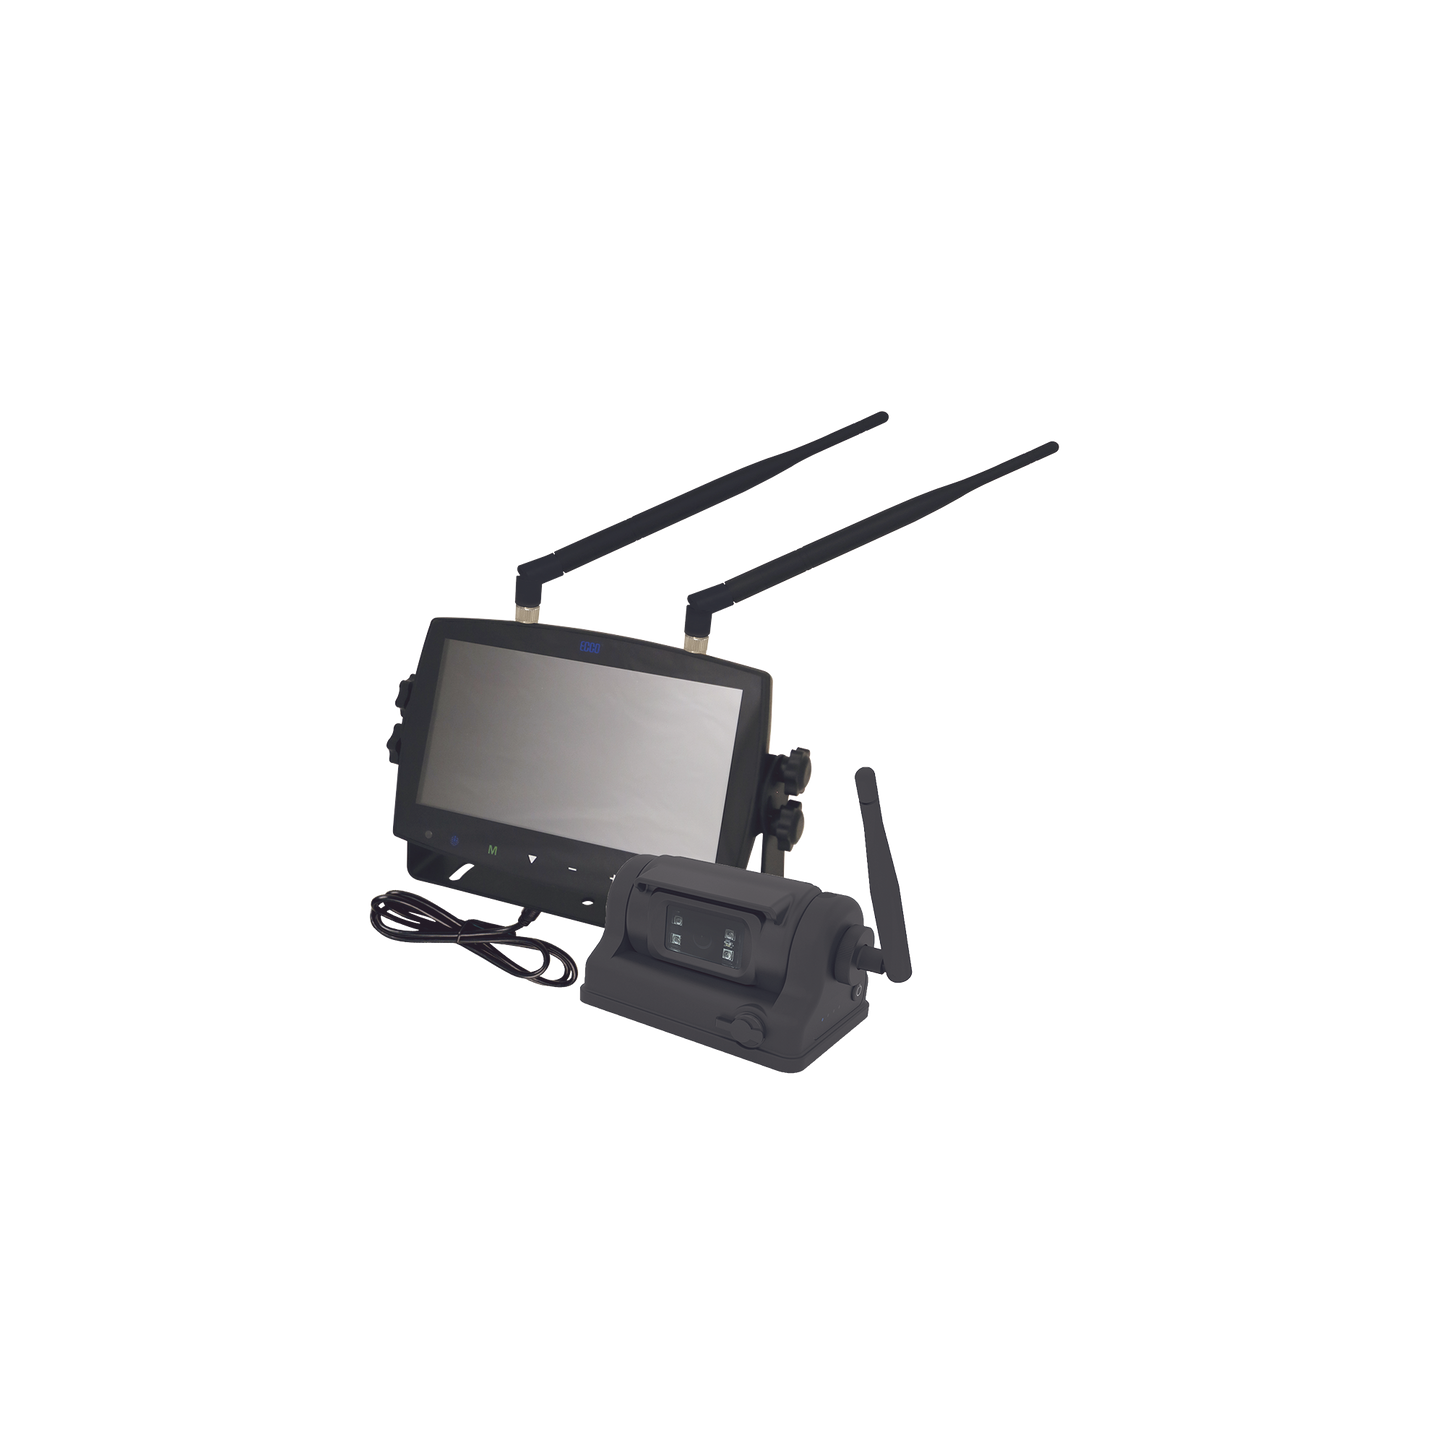 Sistema inalámbrico de reversa con cámara infrarroja , imán y monitor de 7" táctil